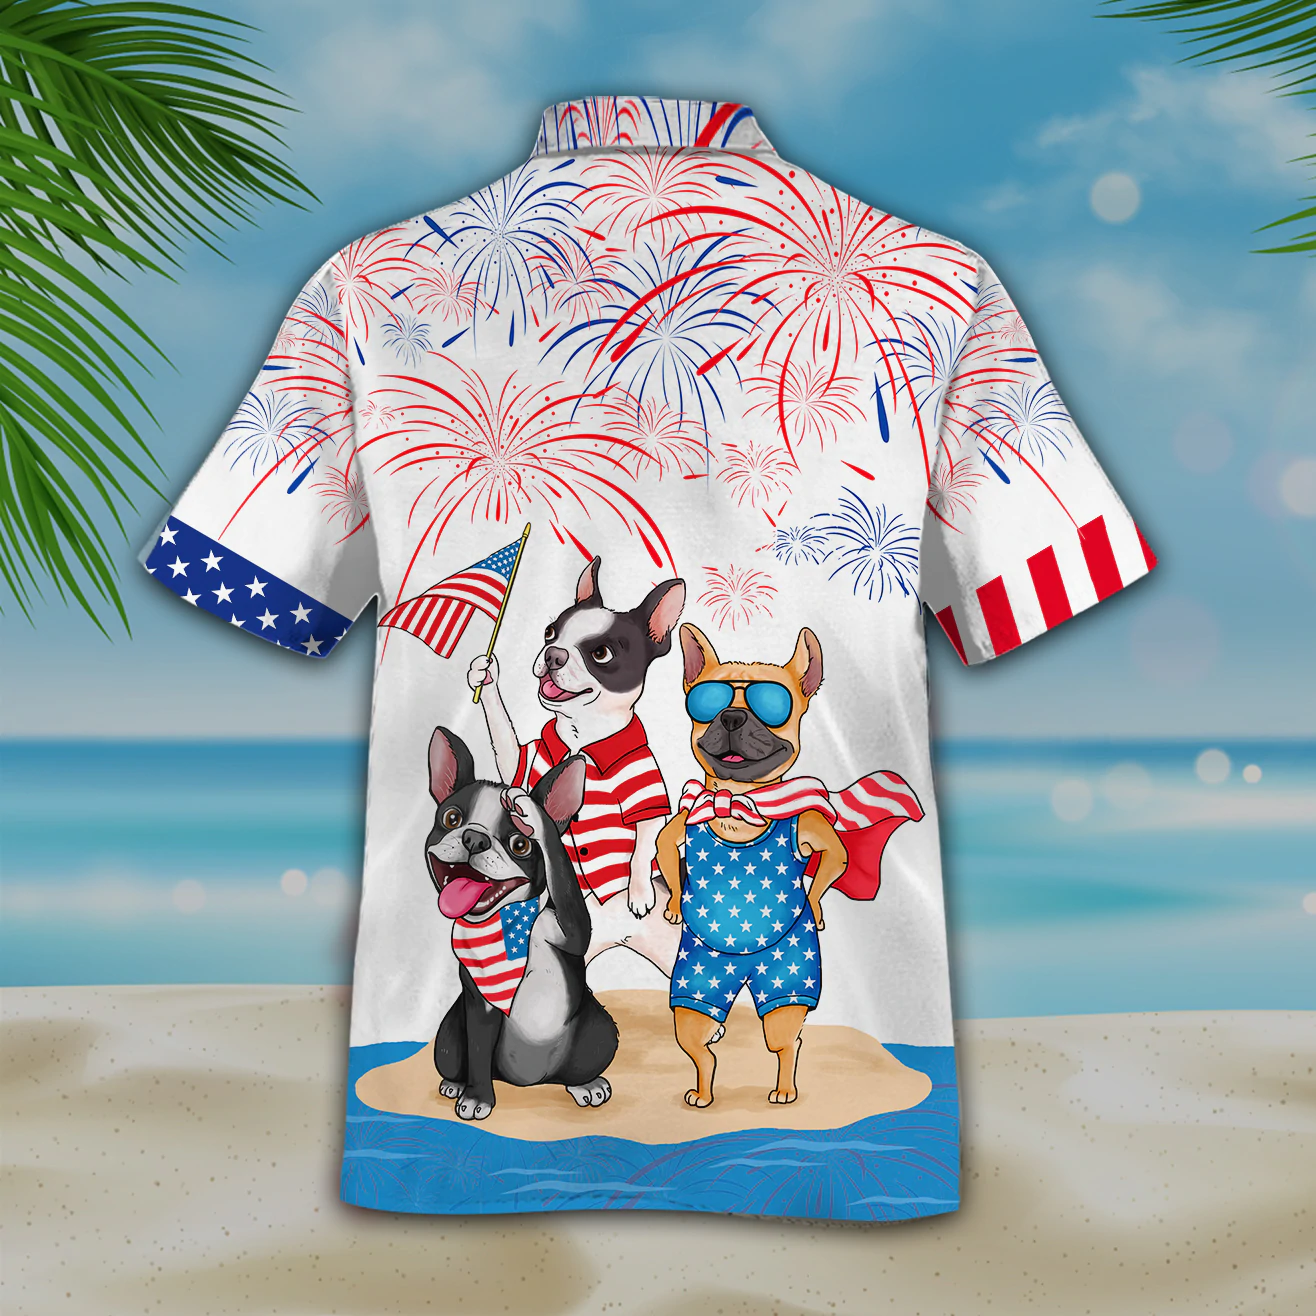 Funny French Bulldog Hawaiian Shirt Full Printed For 4Th Of July Gifts/ Patriotic Present Dog Hawaii Shirt Short Sleeve